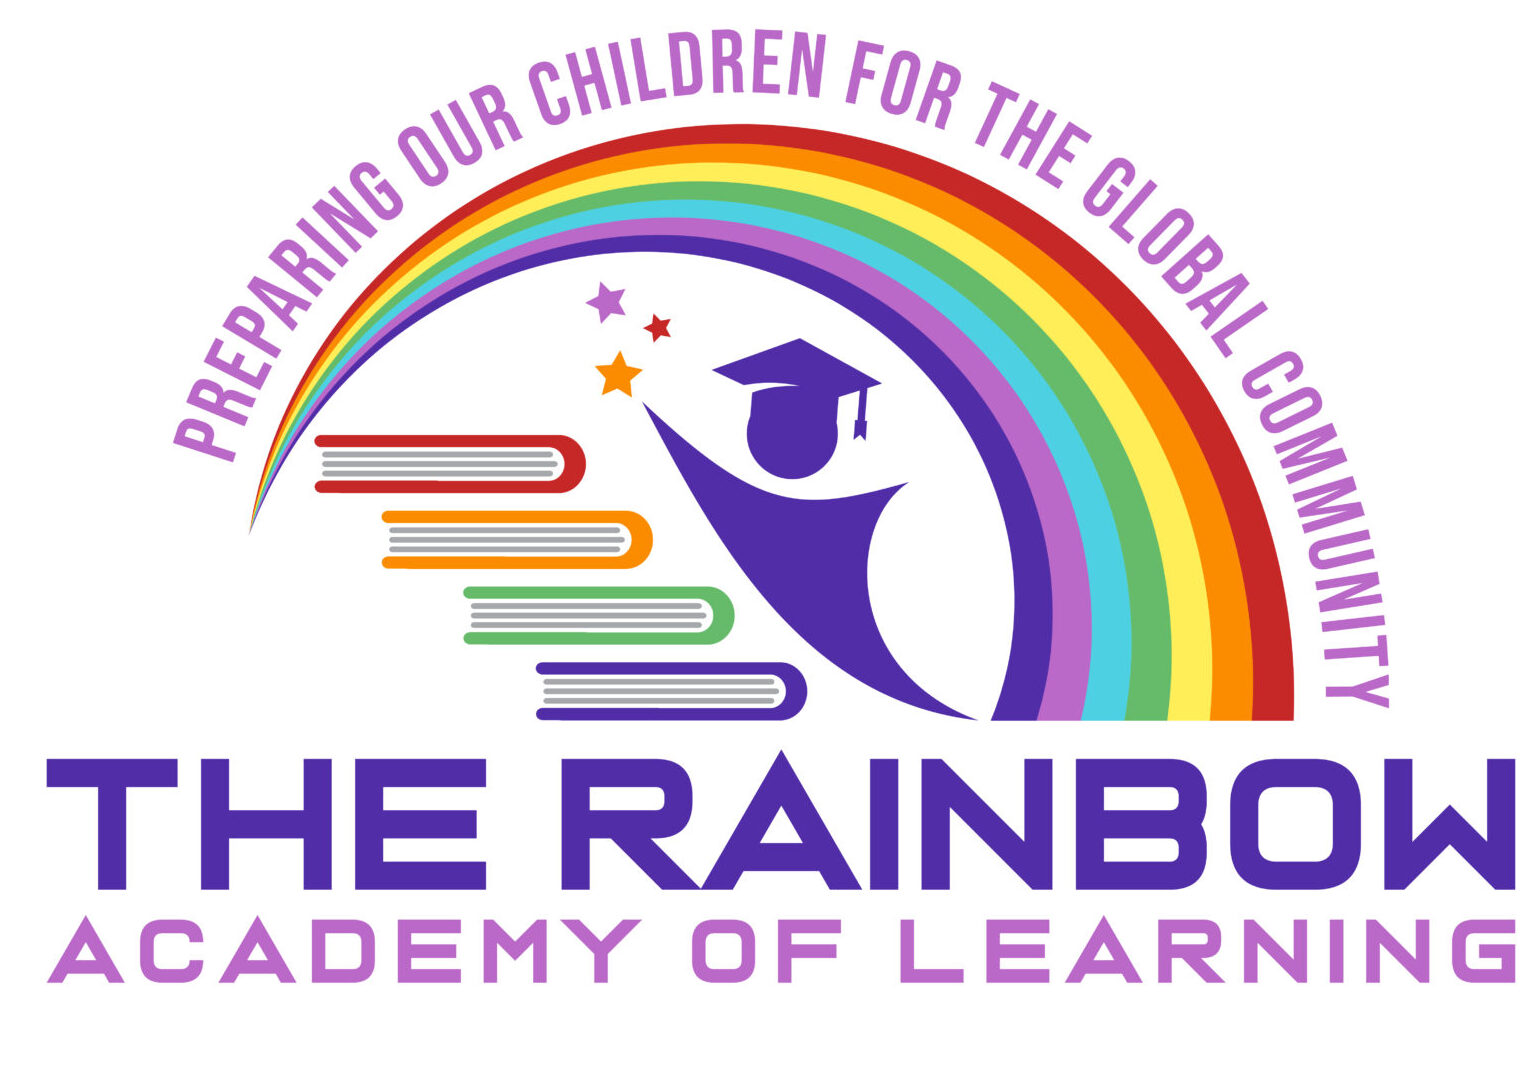 RAINBOW ACADEMY OF LEARNING